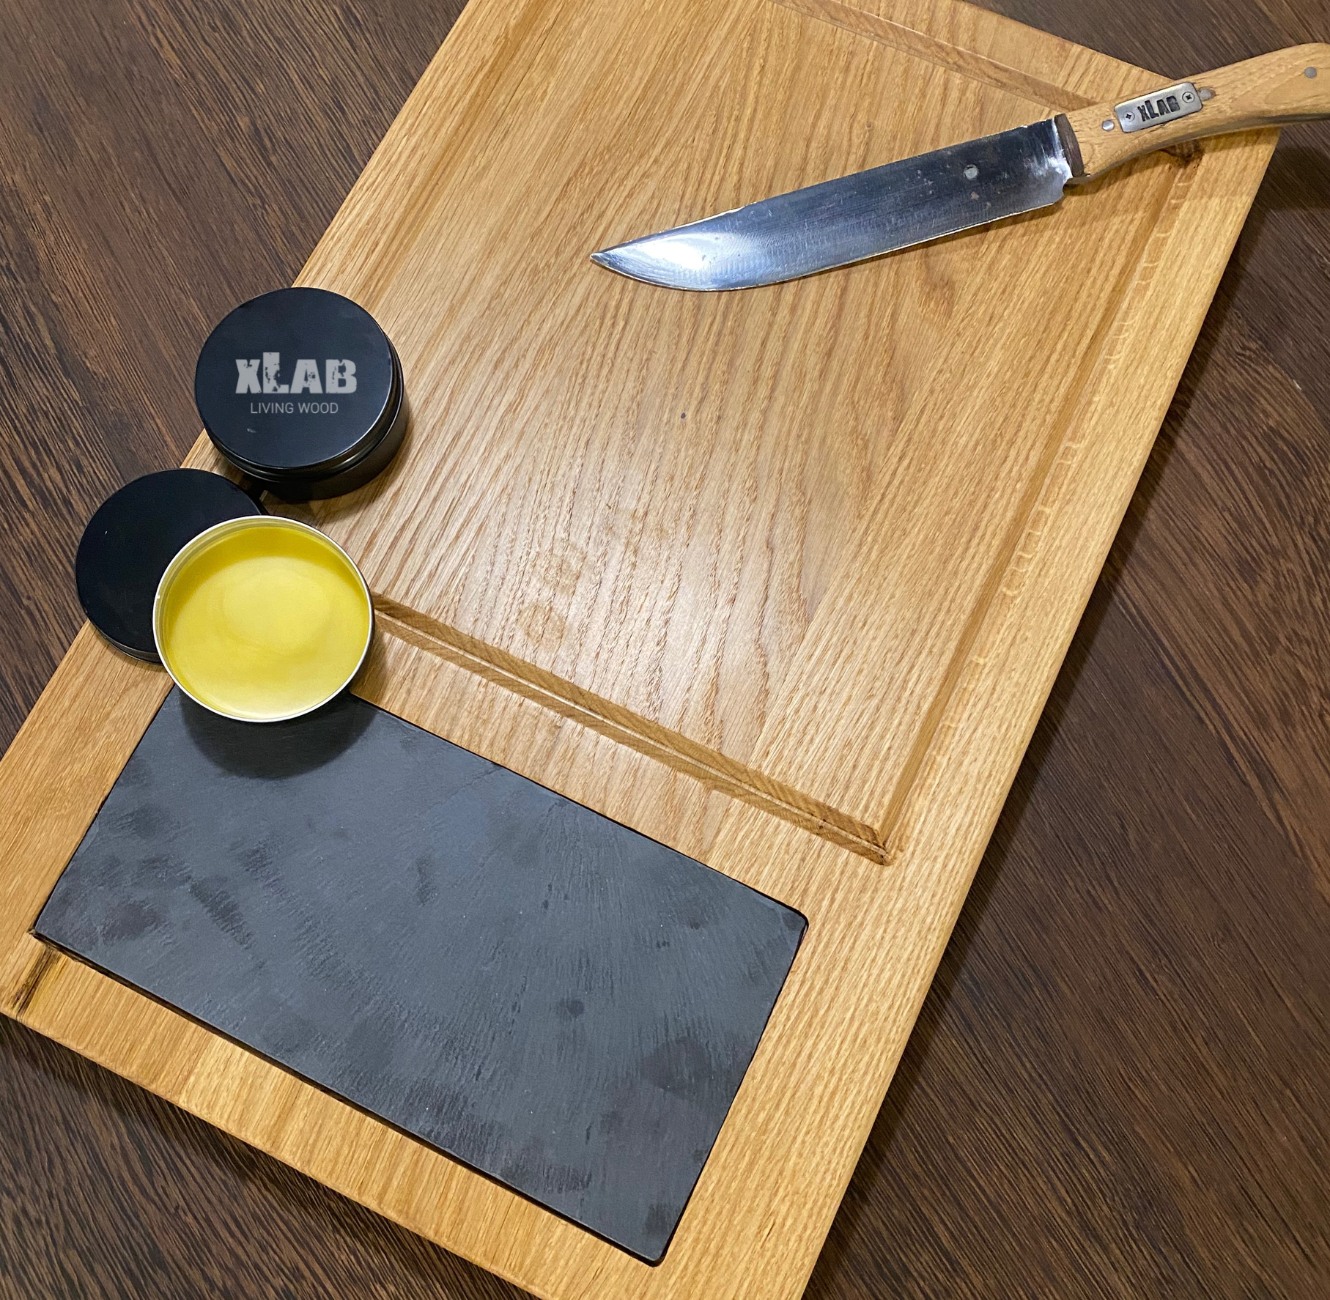 Tagliere da tavola in legno vassoio con inserto in ardesia 60 x 38 x 4 cm -  XLAB Design